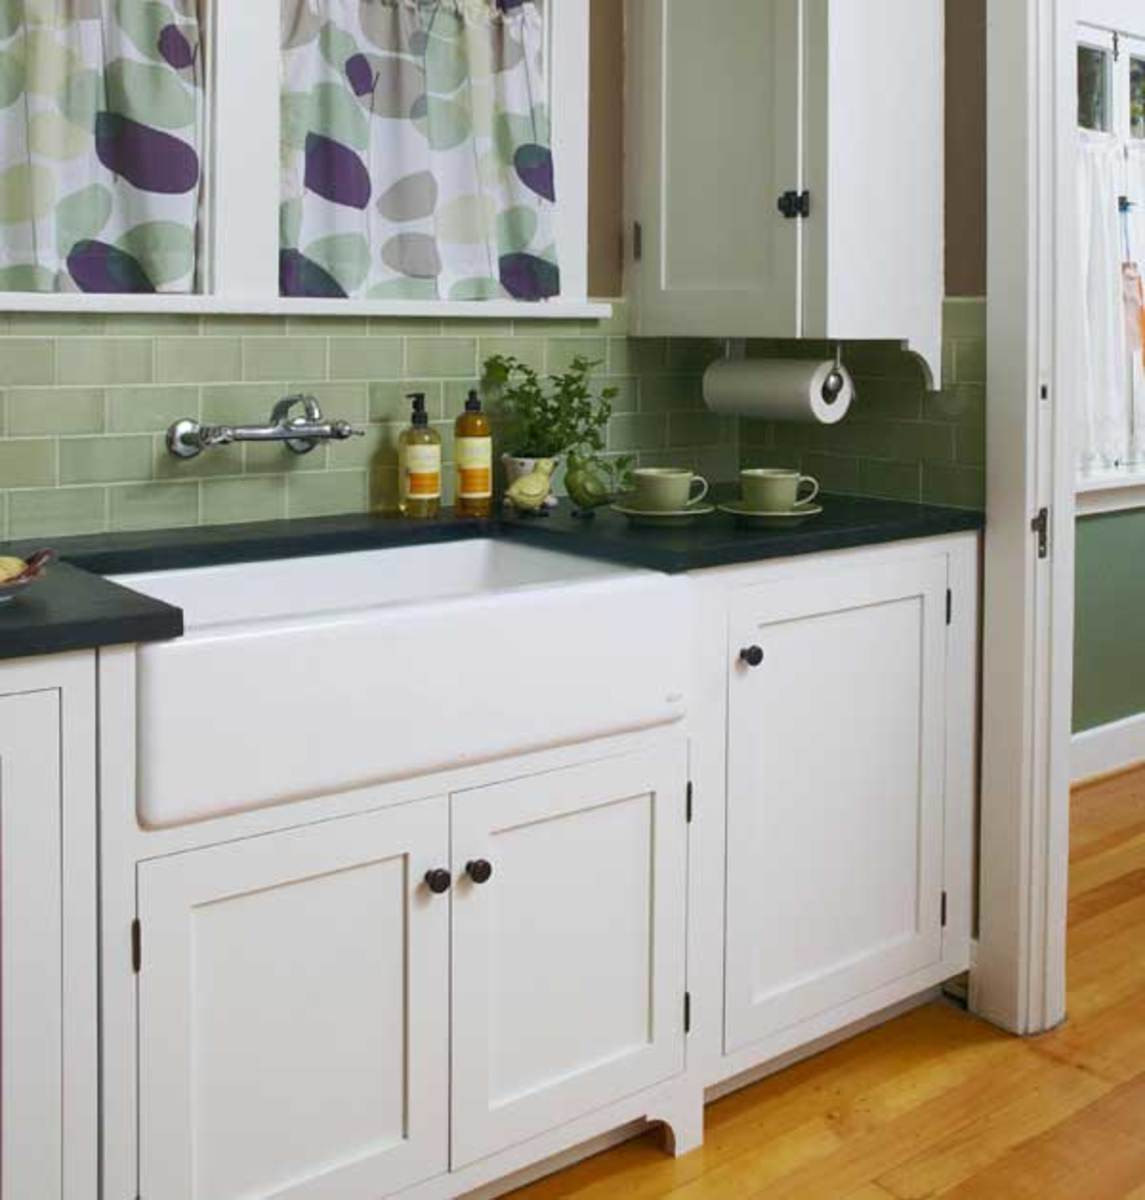 Kitchen Sink Backsplashes
 Countertop Sink & Backsplash Arts & Crafts Homes and